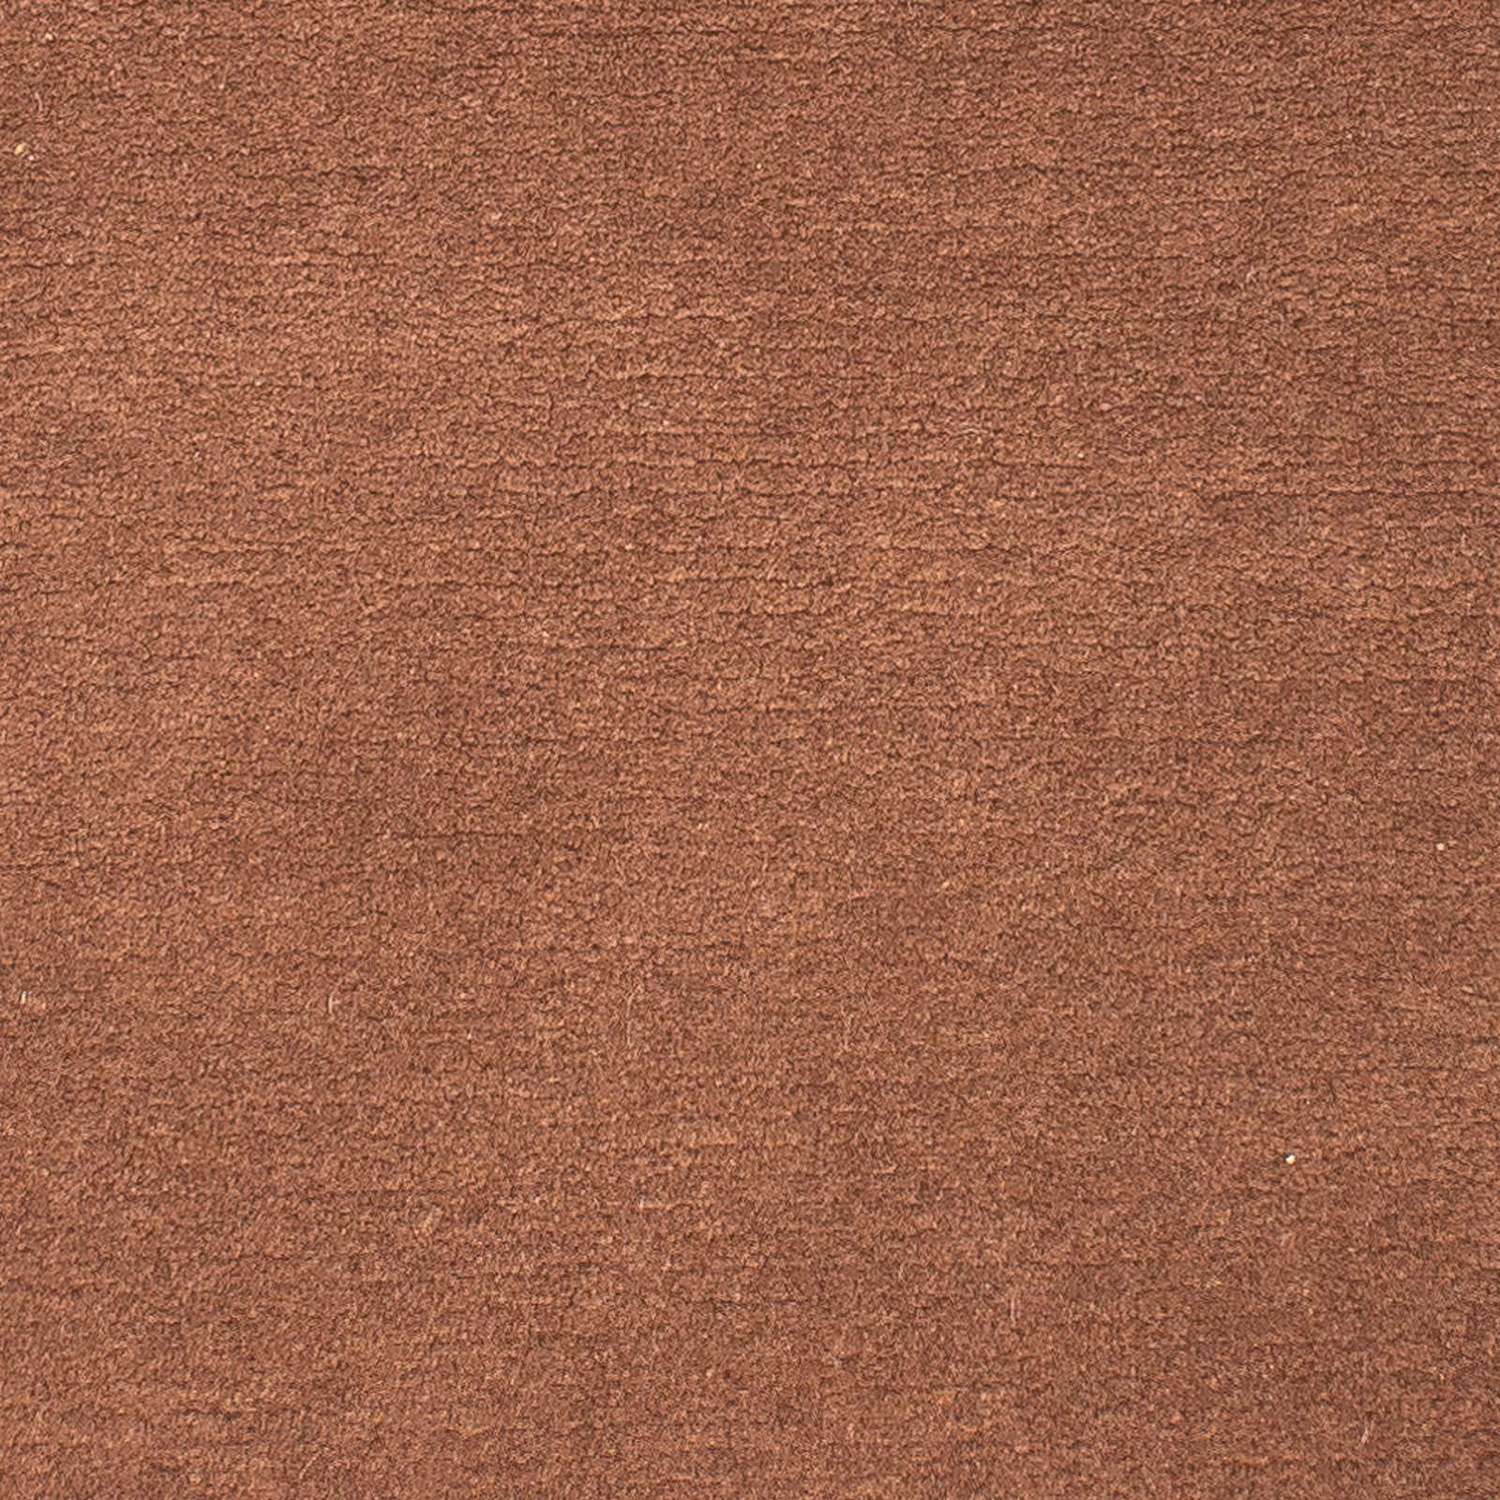 Nepal Rug - 140 x 70 cm - brown